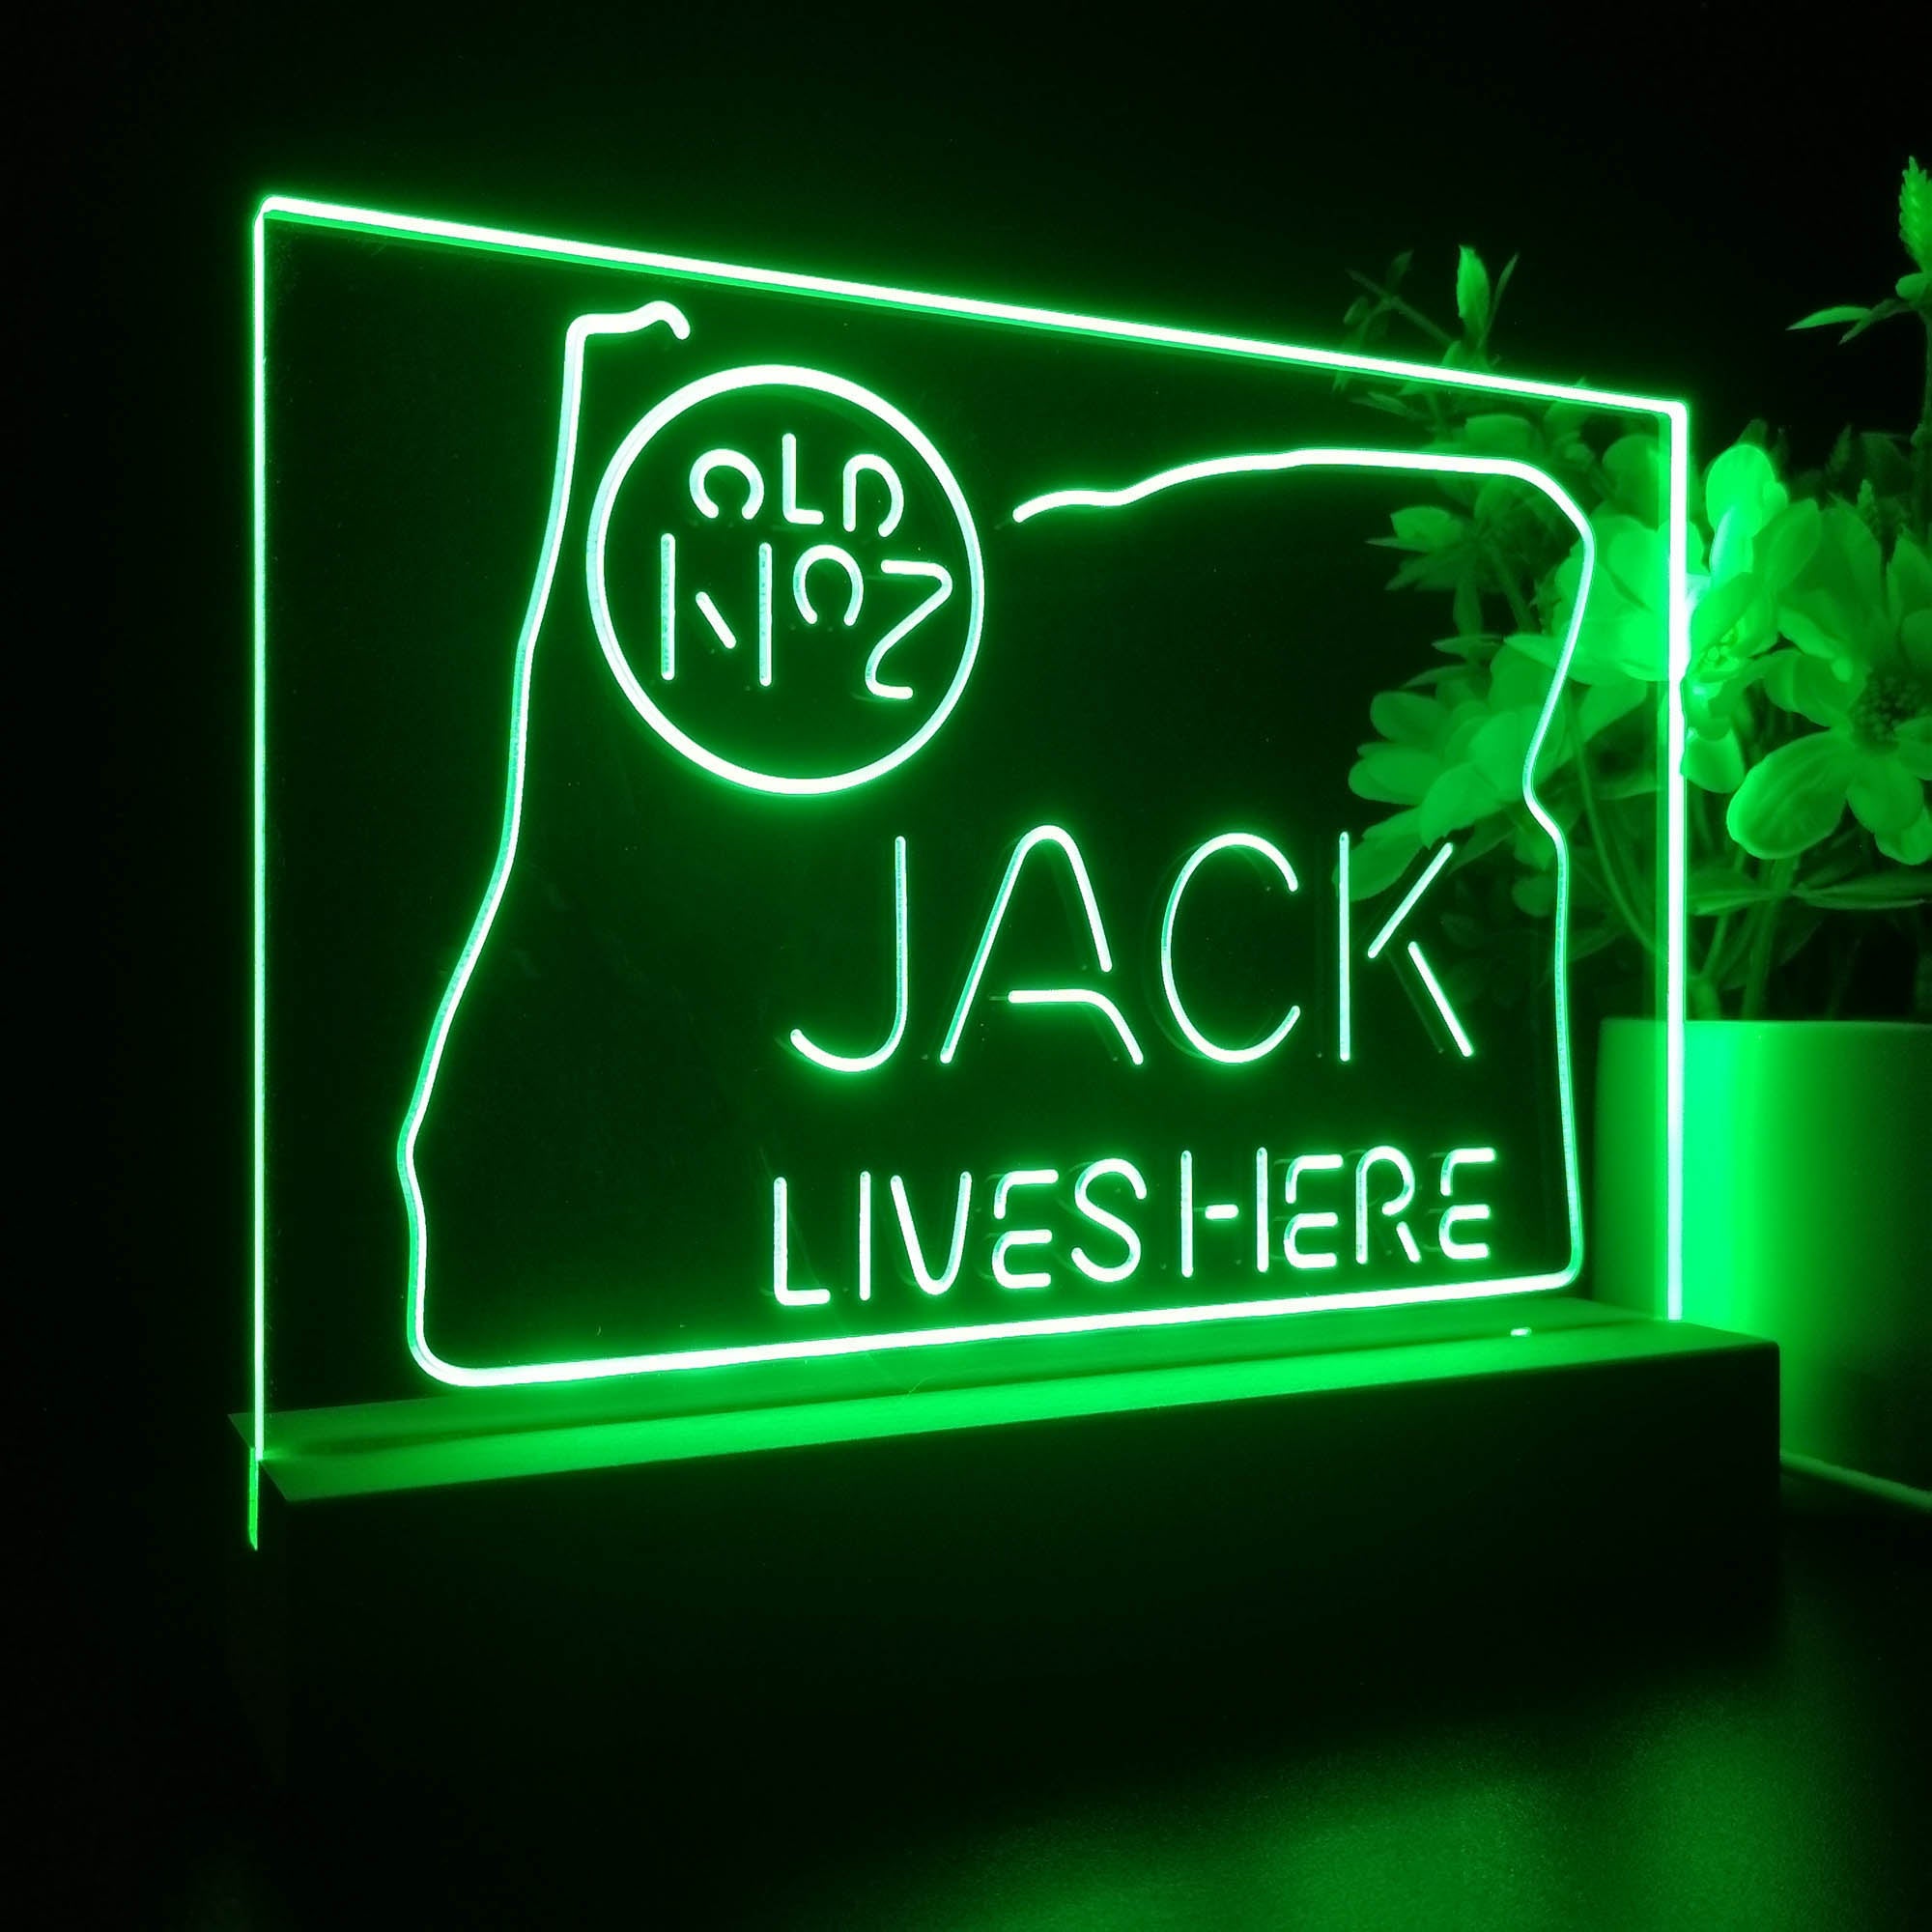 Oregon Jack Lives Here Neon Sign Pub Bar Lamp